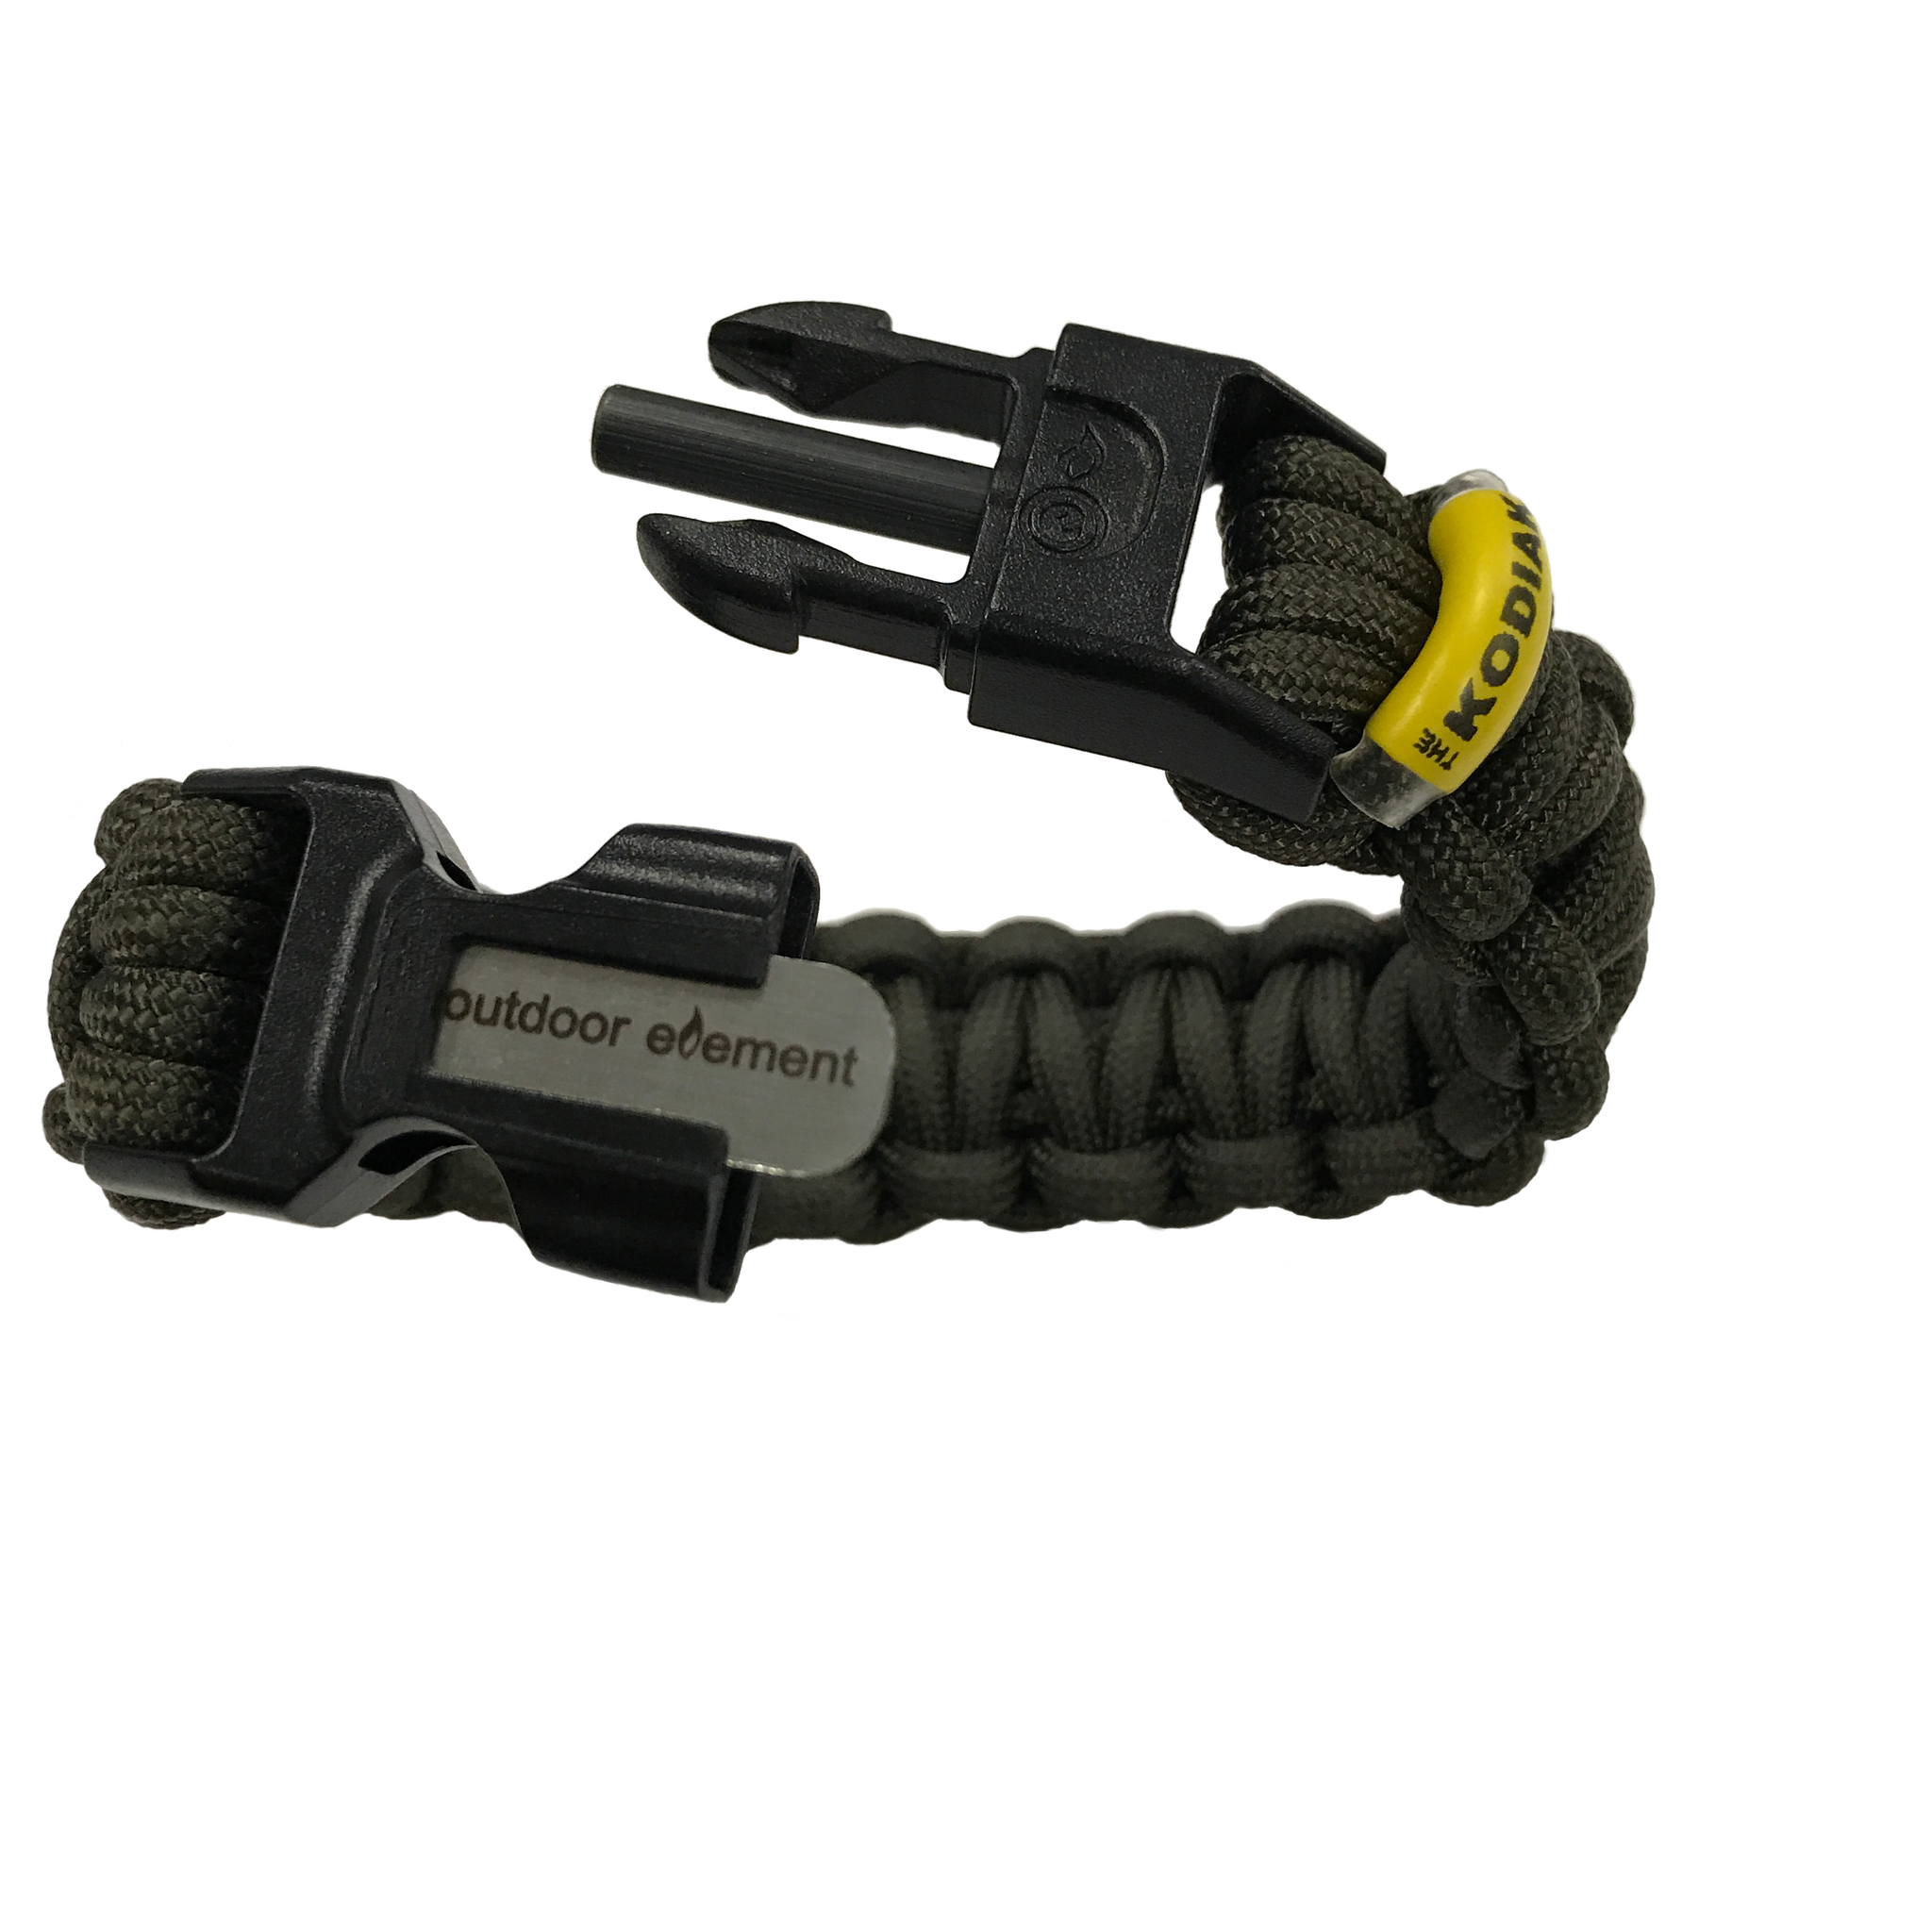 Kodiak Survival Paracord Bracelet